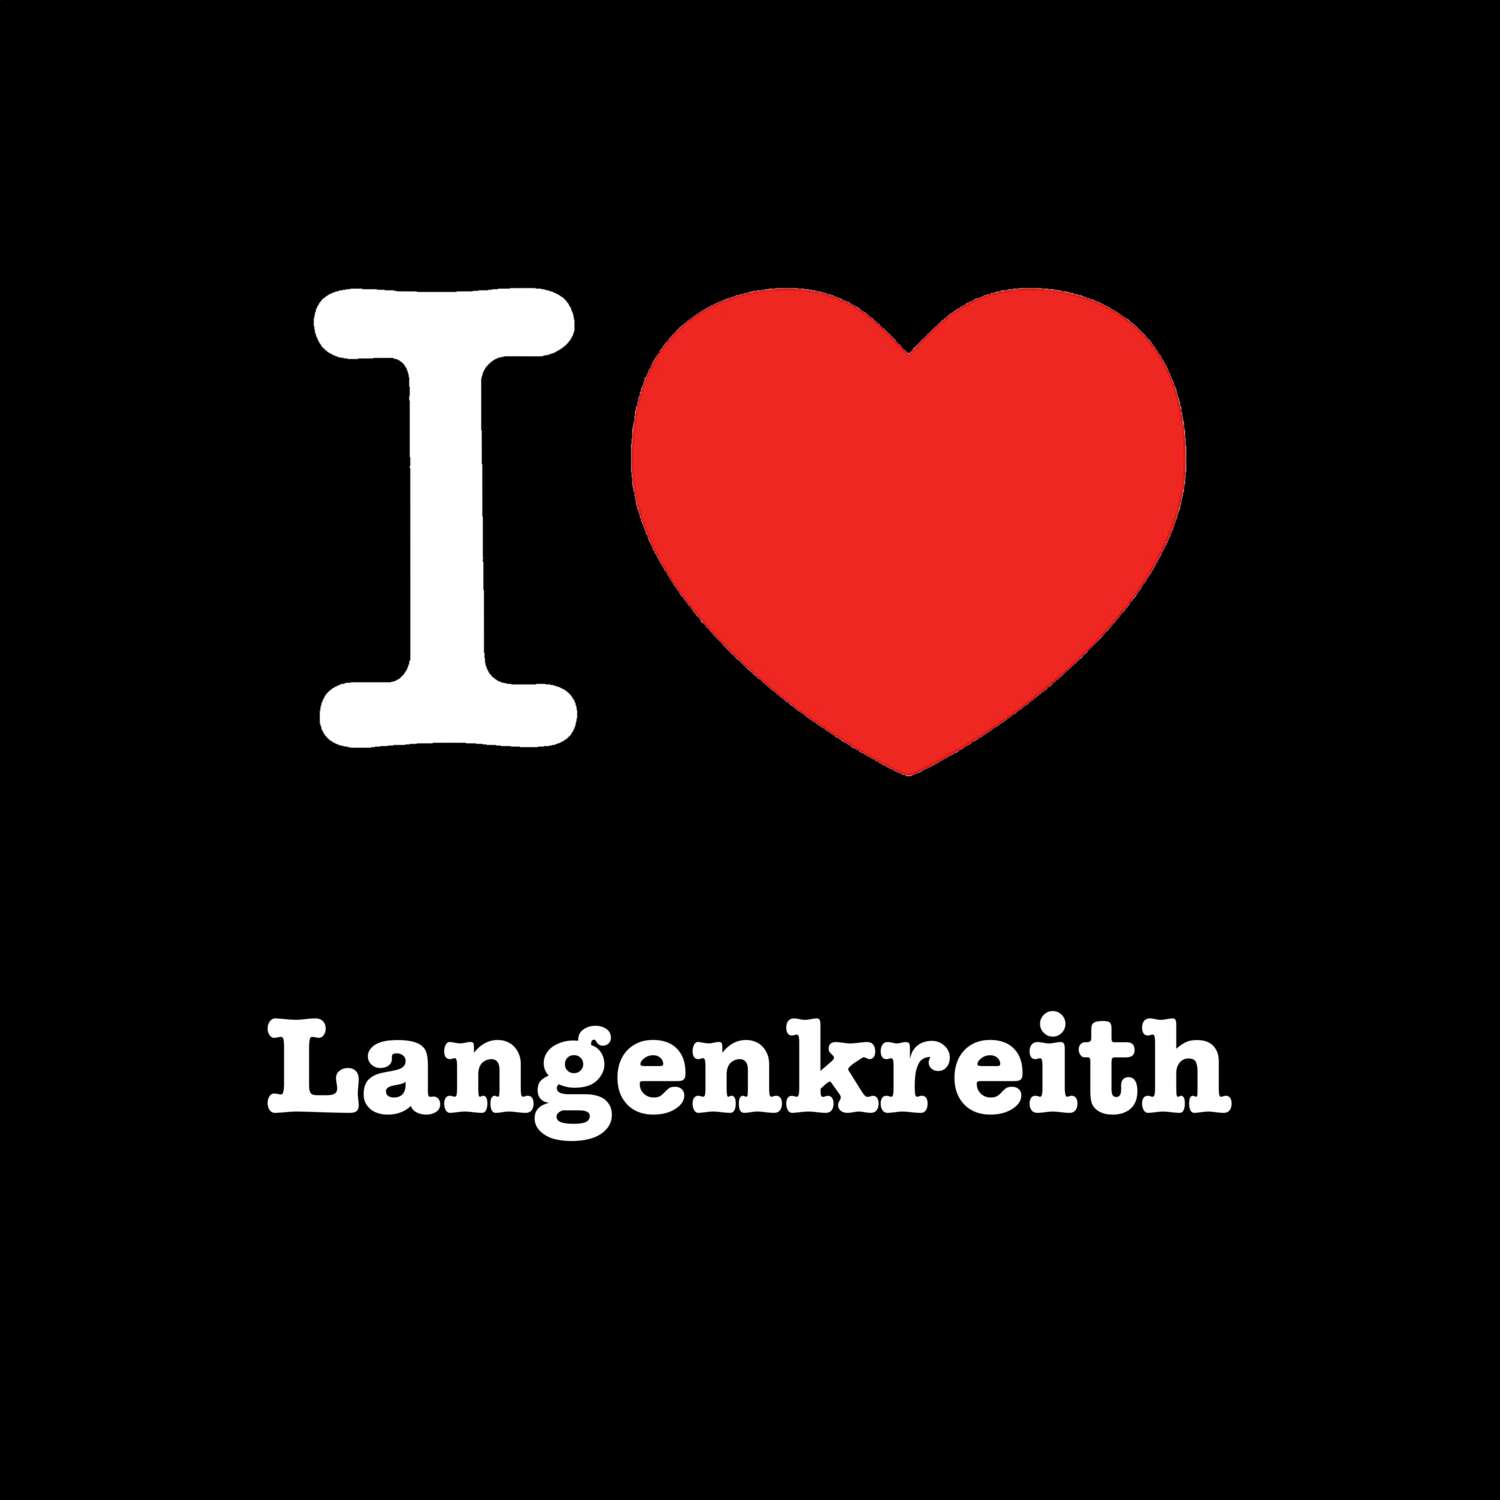 Langenkreith T-Shirt »I love«